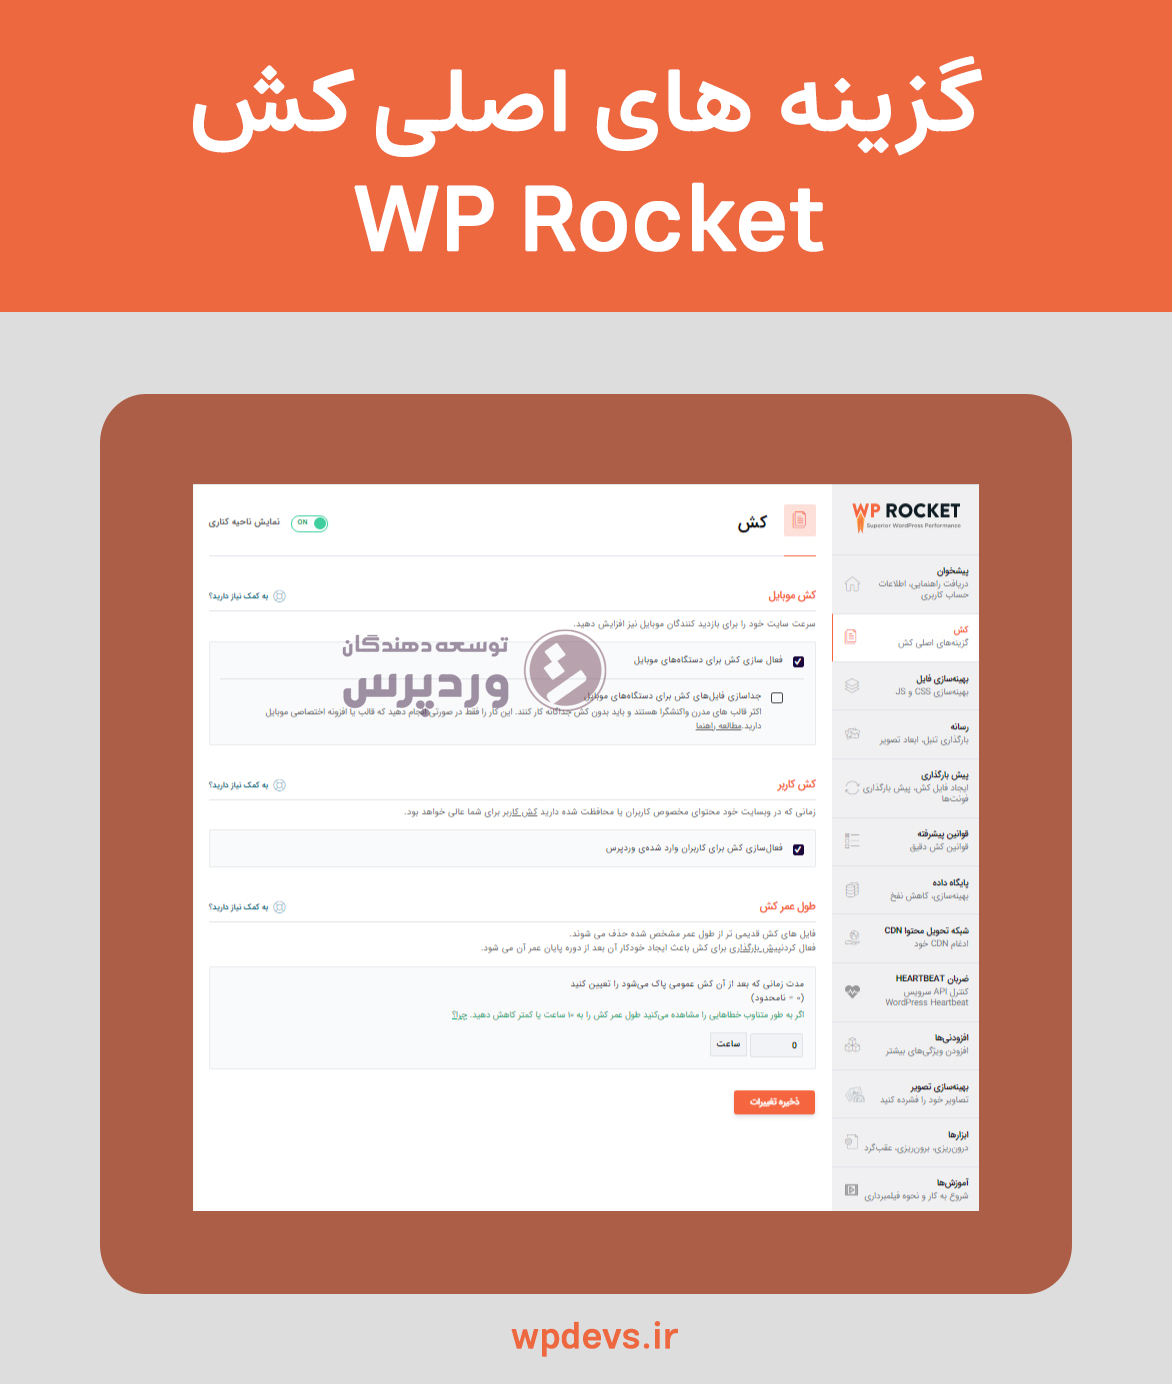 افزونه بهینه سازی و افزایش سرعت سایت wp rocket کش